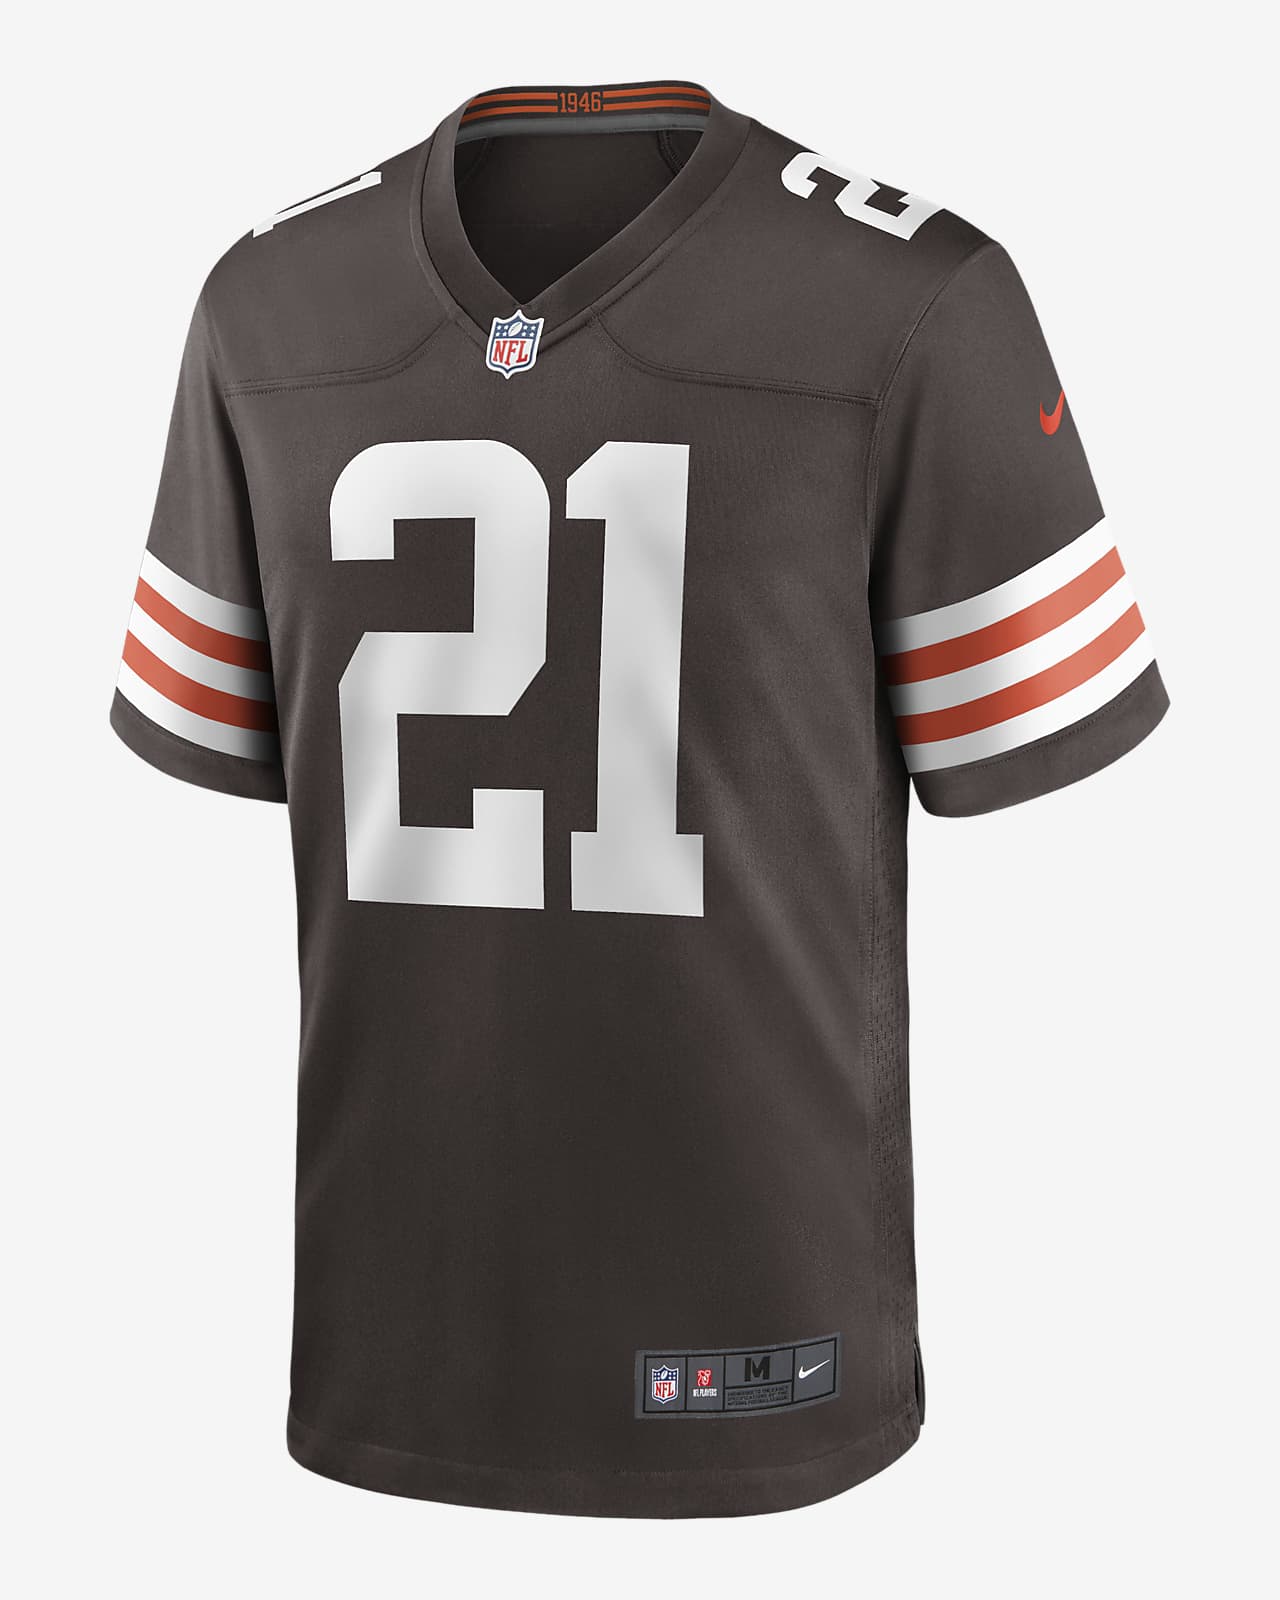 NFL Cleveland Browns (Denzel Ward) Men's Game Football Jersey